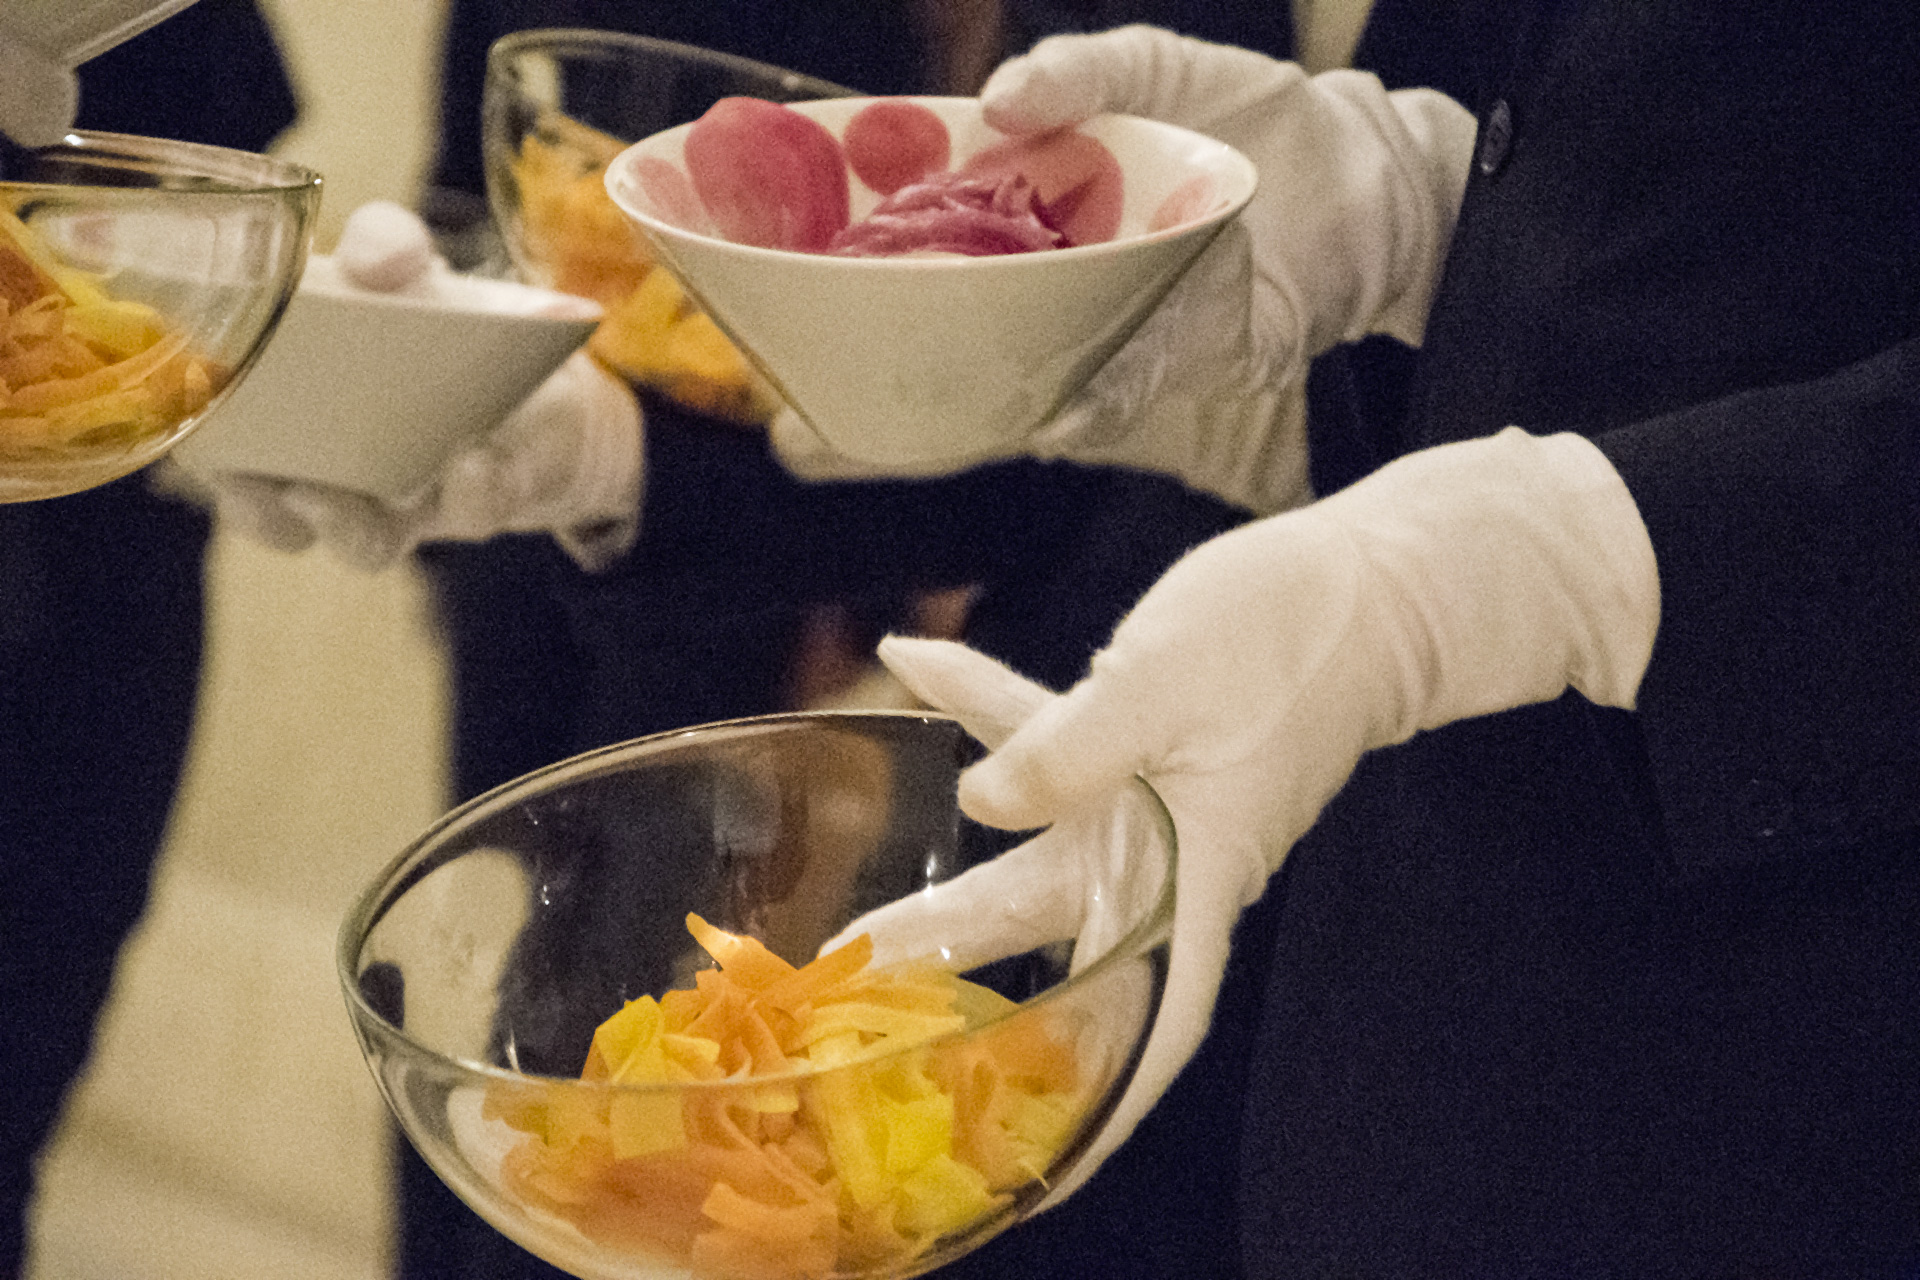 aire_food_banquet_scientifique_gastronomie_diplomatie_waiters_chefs_3